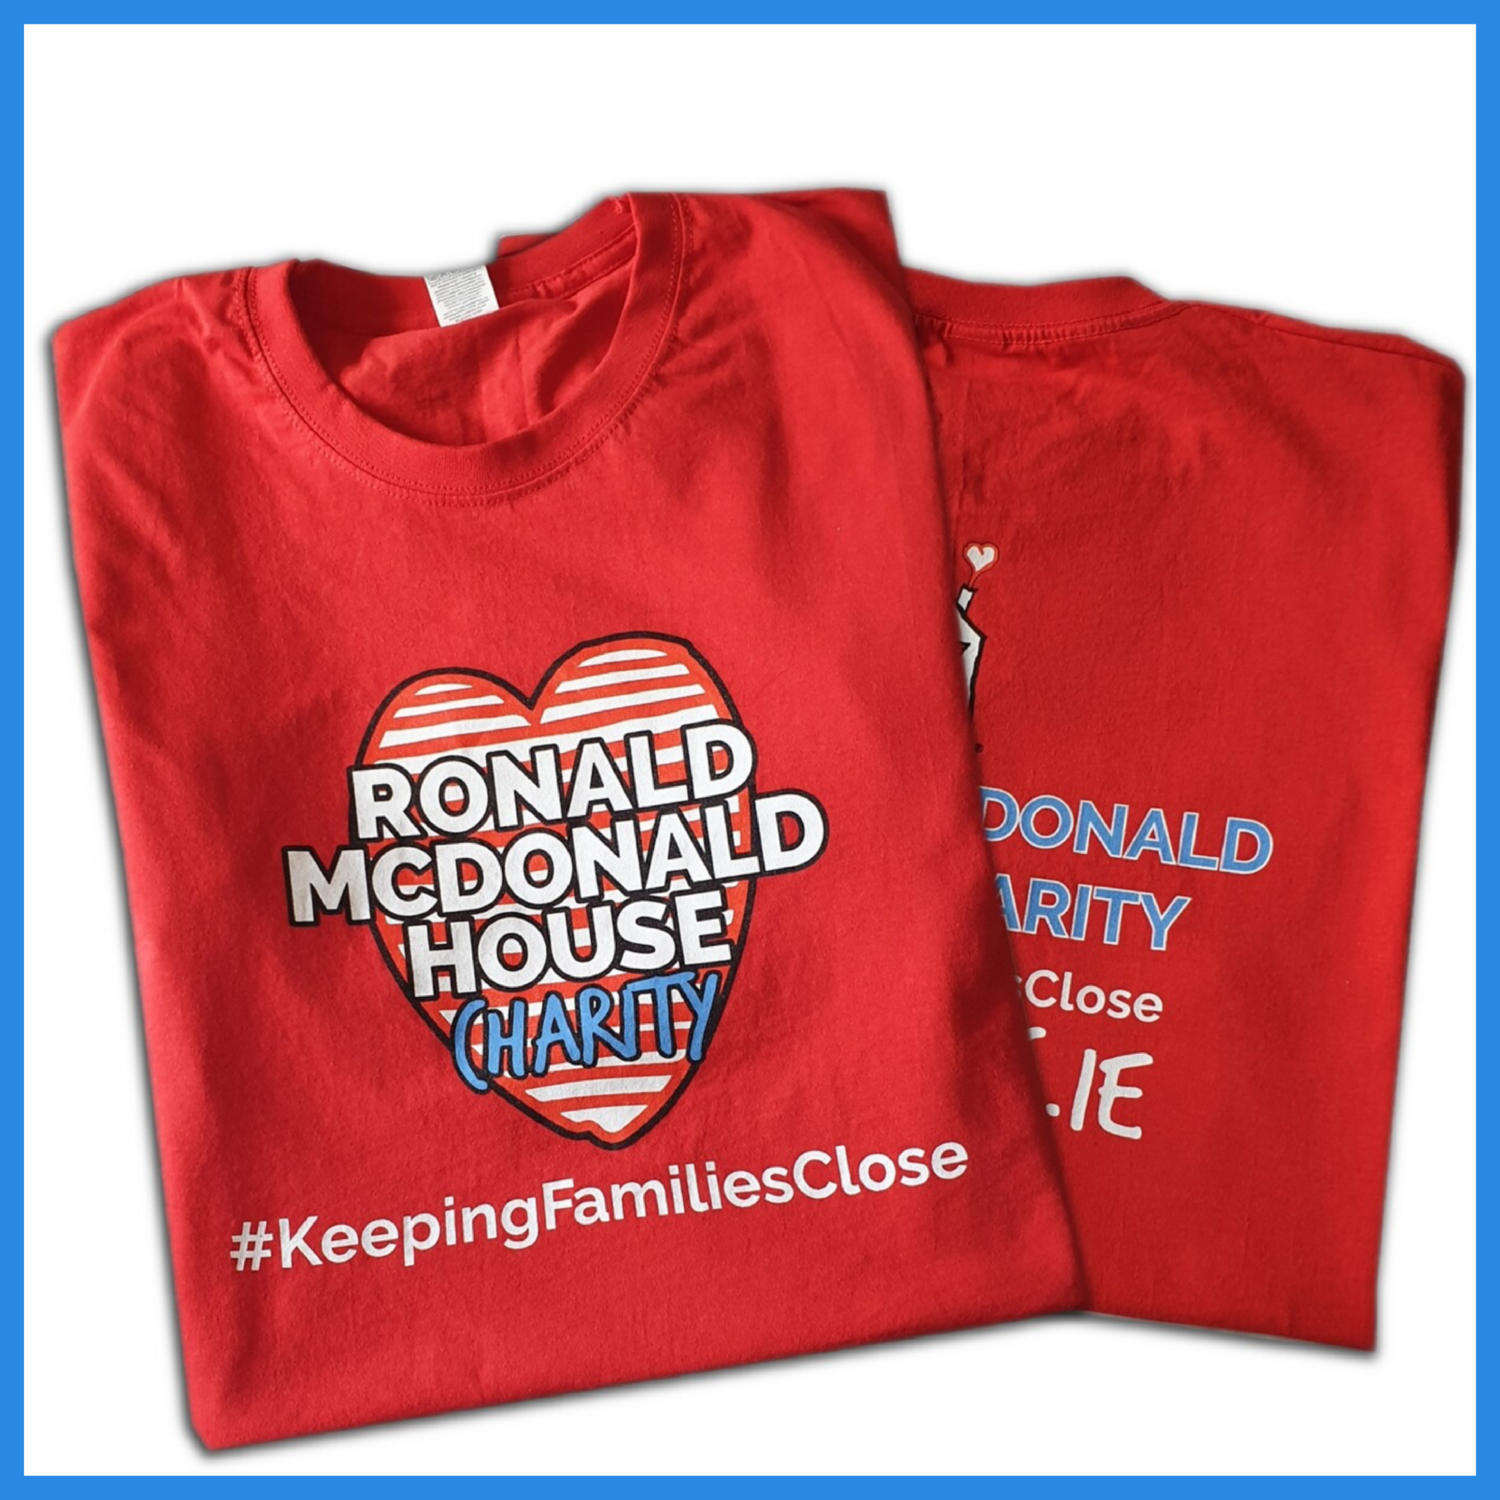 RMHC Charity T shirt